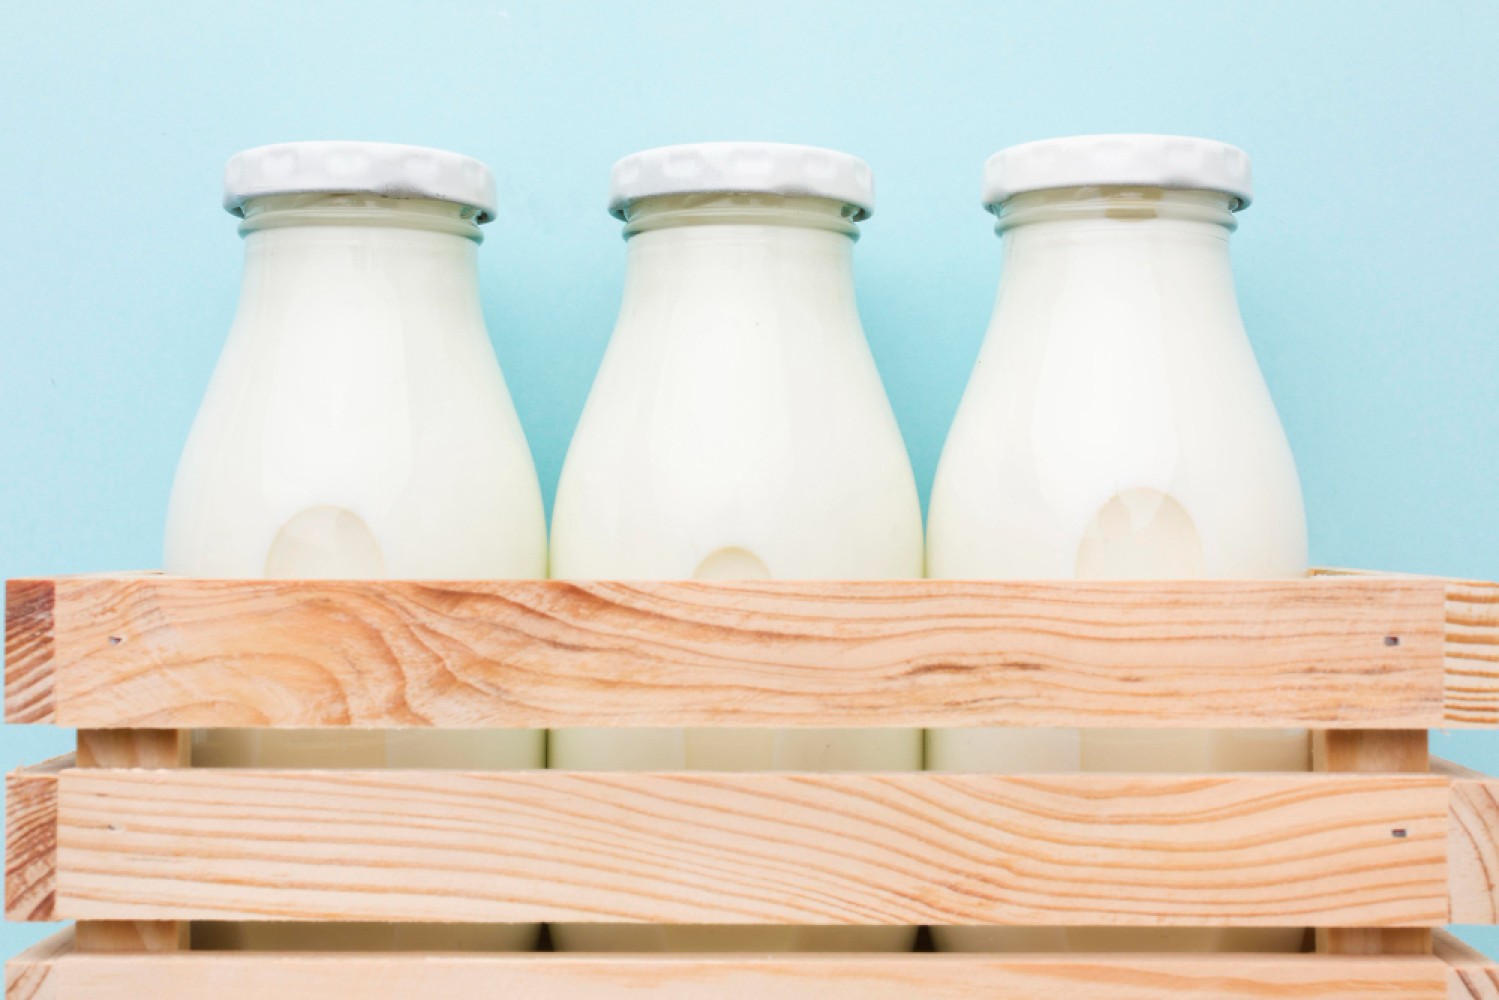 Статья рассматривает технологии термизации и ультропастеризации в молочной промышленности, подчеркивая их важность для обеспечения качества и безопасности продуктов. Ответственность этапов процесса, ключевые различия и преимущества методов обсуждаются подробно.